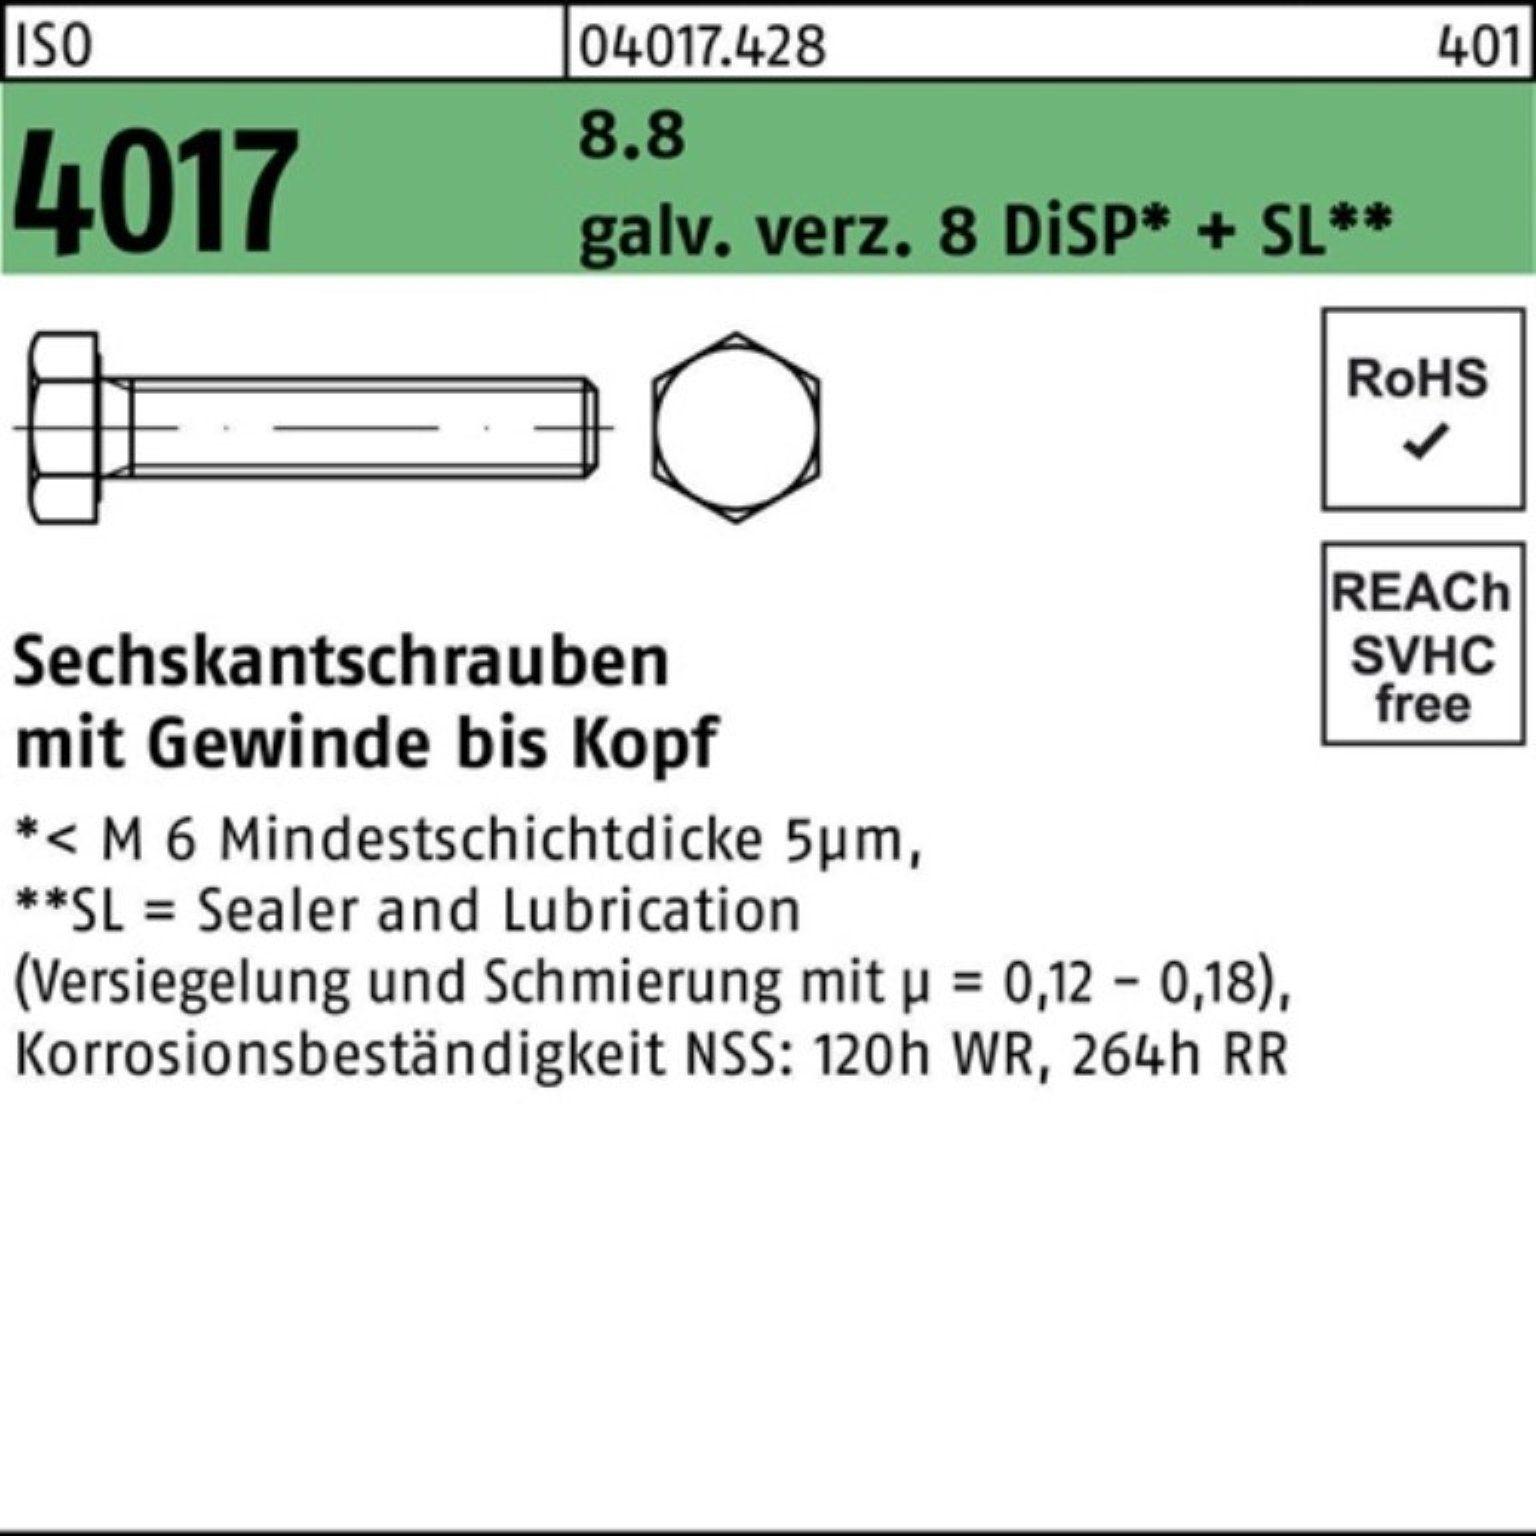 Bufab Sechskantschraube 500er Pack Sechskantschraube 8 8.8 8 DiSP+S 4017 M5x ISO galv.verz. VG